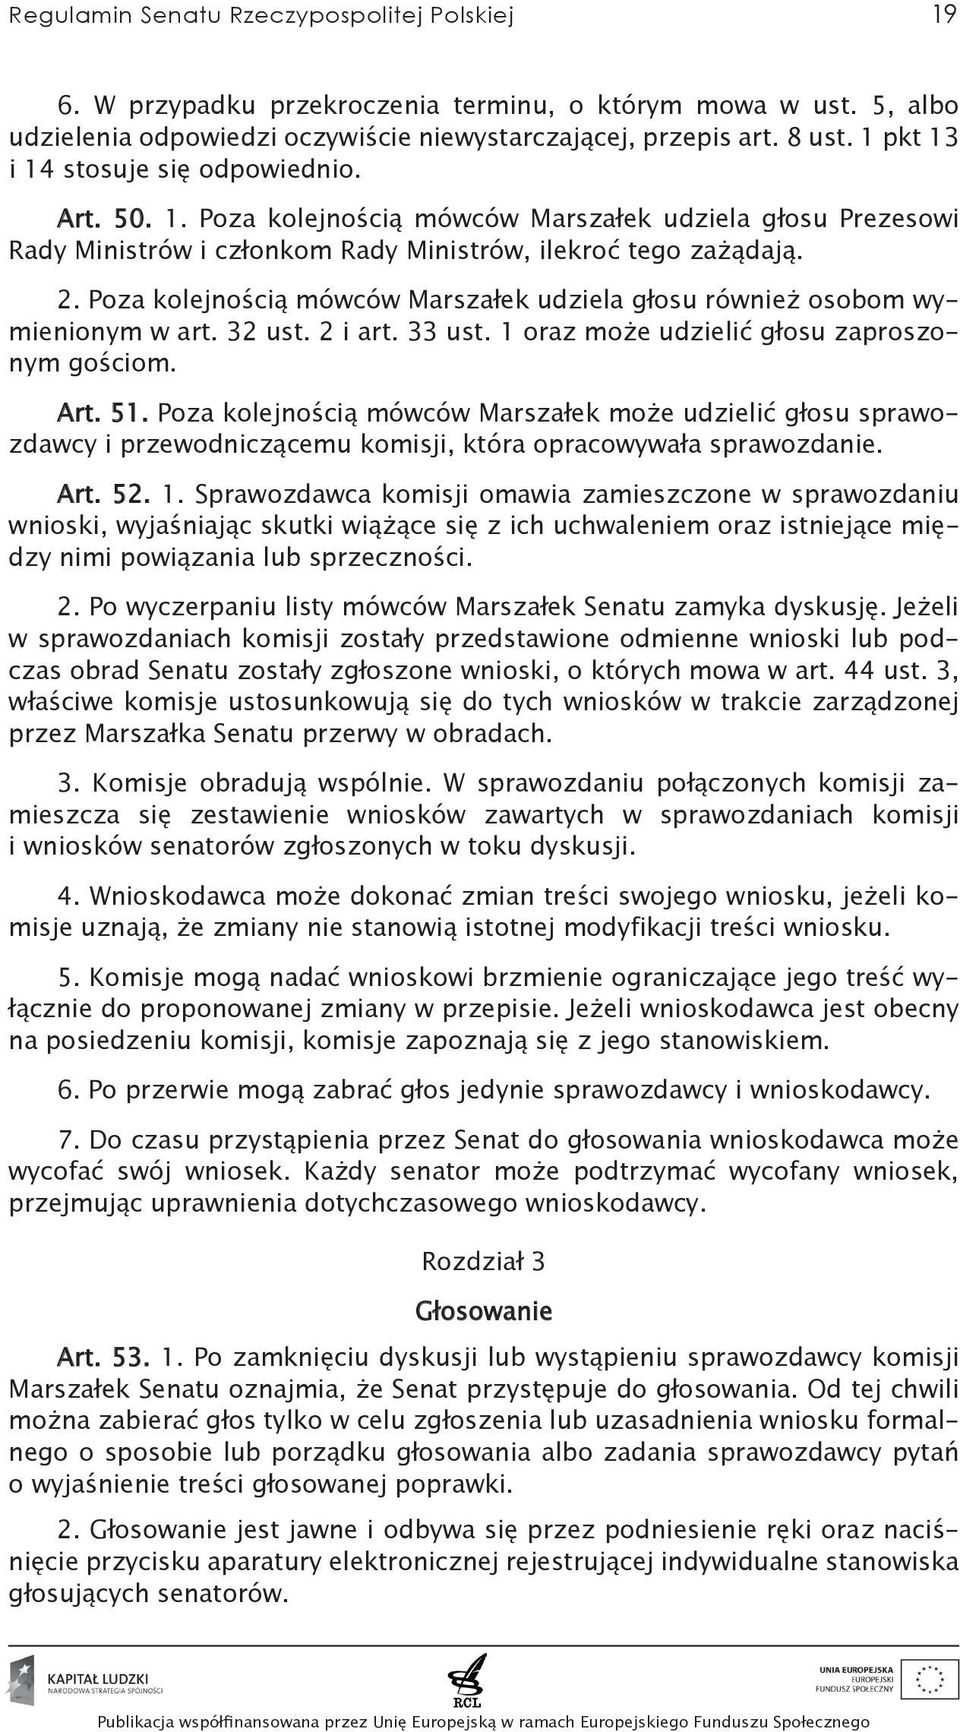 Poza kolejnością mówców Marszałek udziela głosu również osobom wymienionym w art. 32 ust. 2 i art. 33 ust. 1 oraz może udzielić głosu zaproszonym gościom. Art. 51.